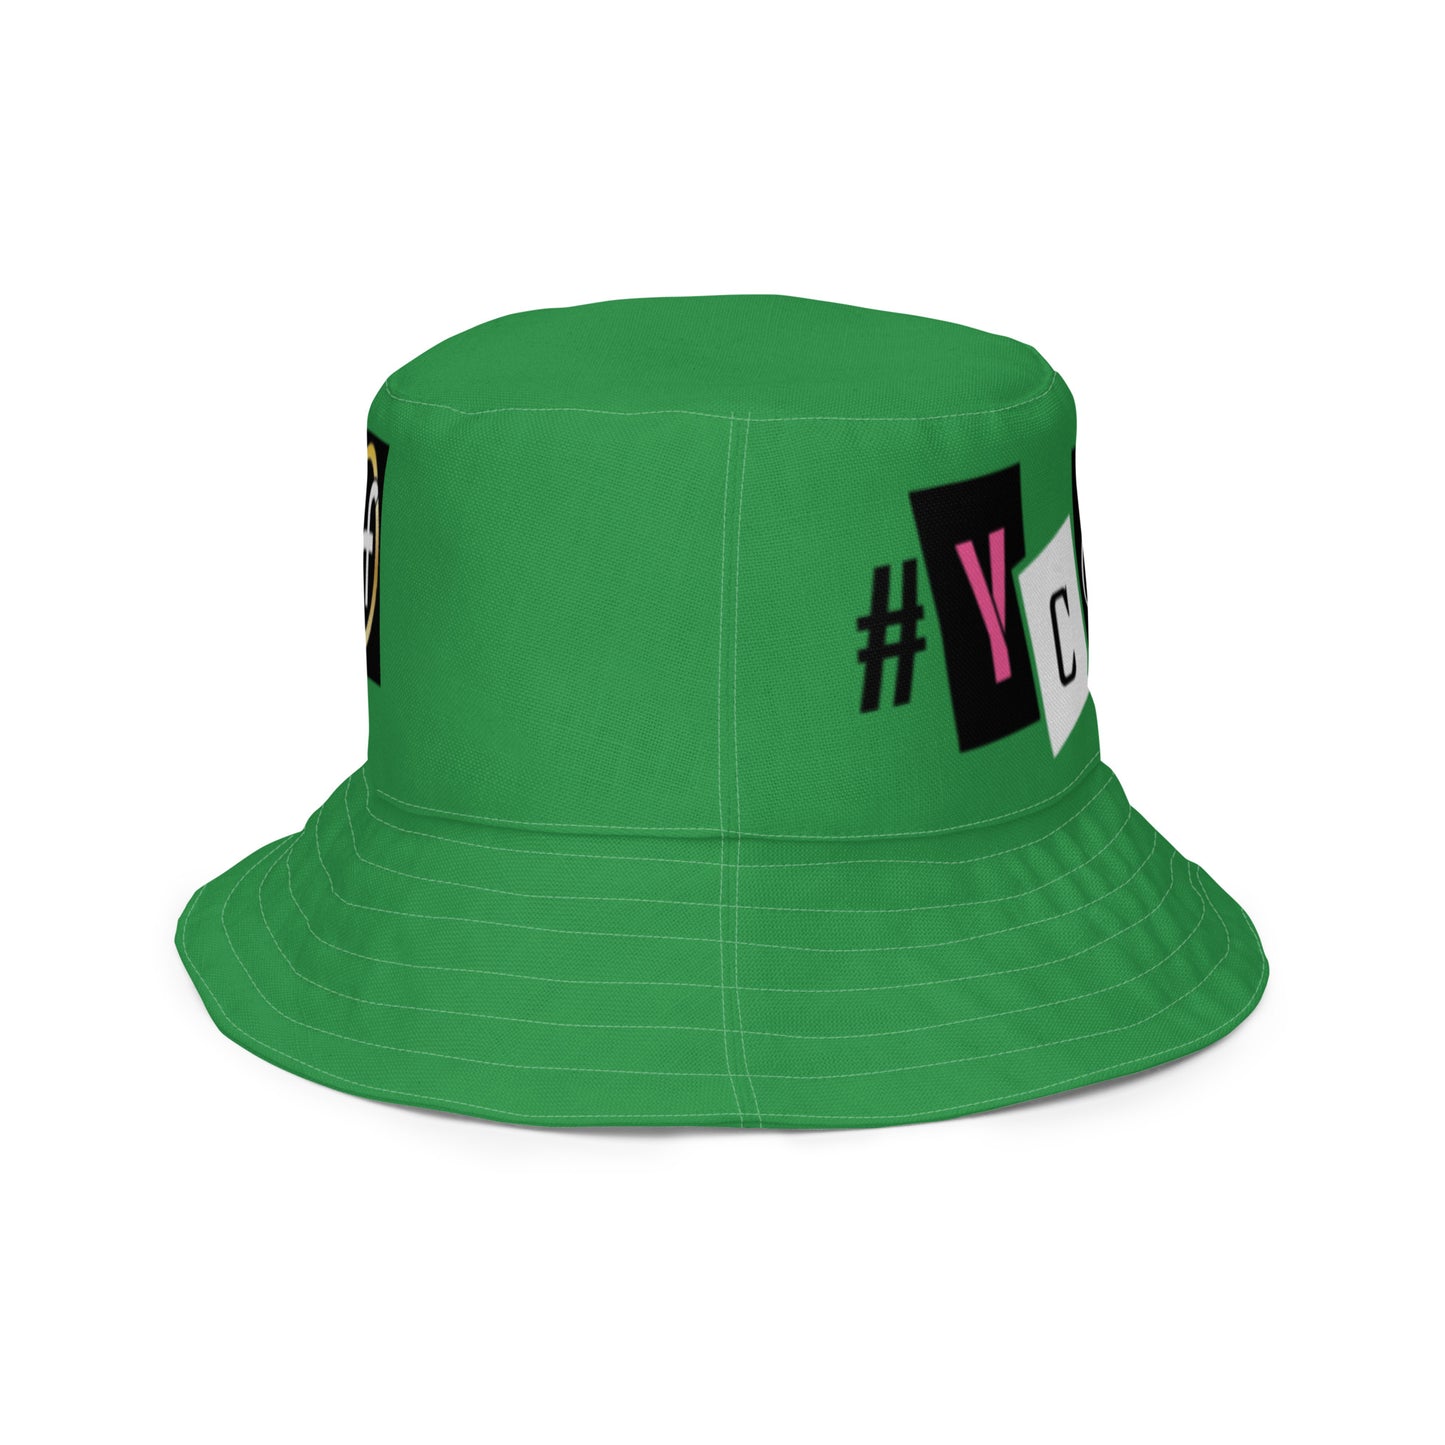 YCSWU bucket hat - green